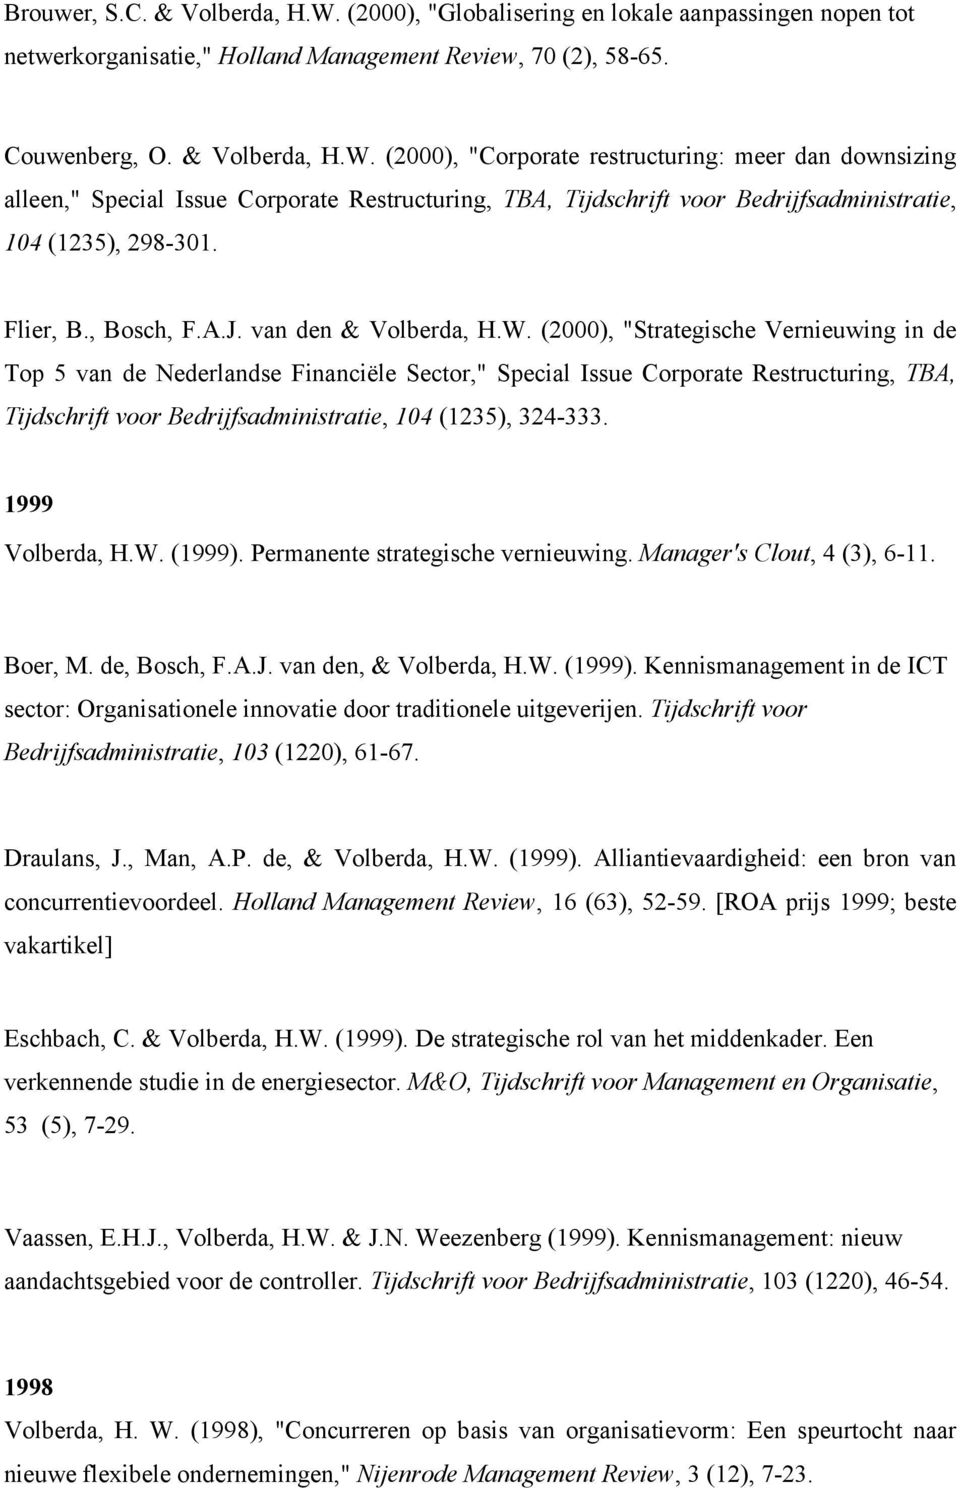 (2000), "Strategische Vernieuwing in de Top 5 van de Nederlandse Financiële Sector," Special Issue Corporate Restructuring, TBA, Tijdschrift voor Bedrijfsadministratie, 104 (1235), 324-333.